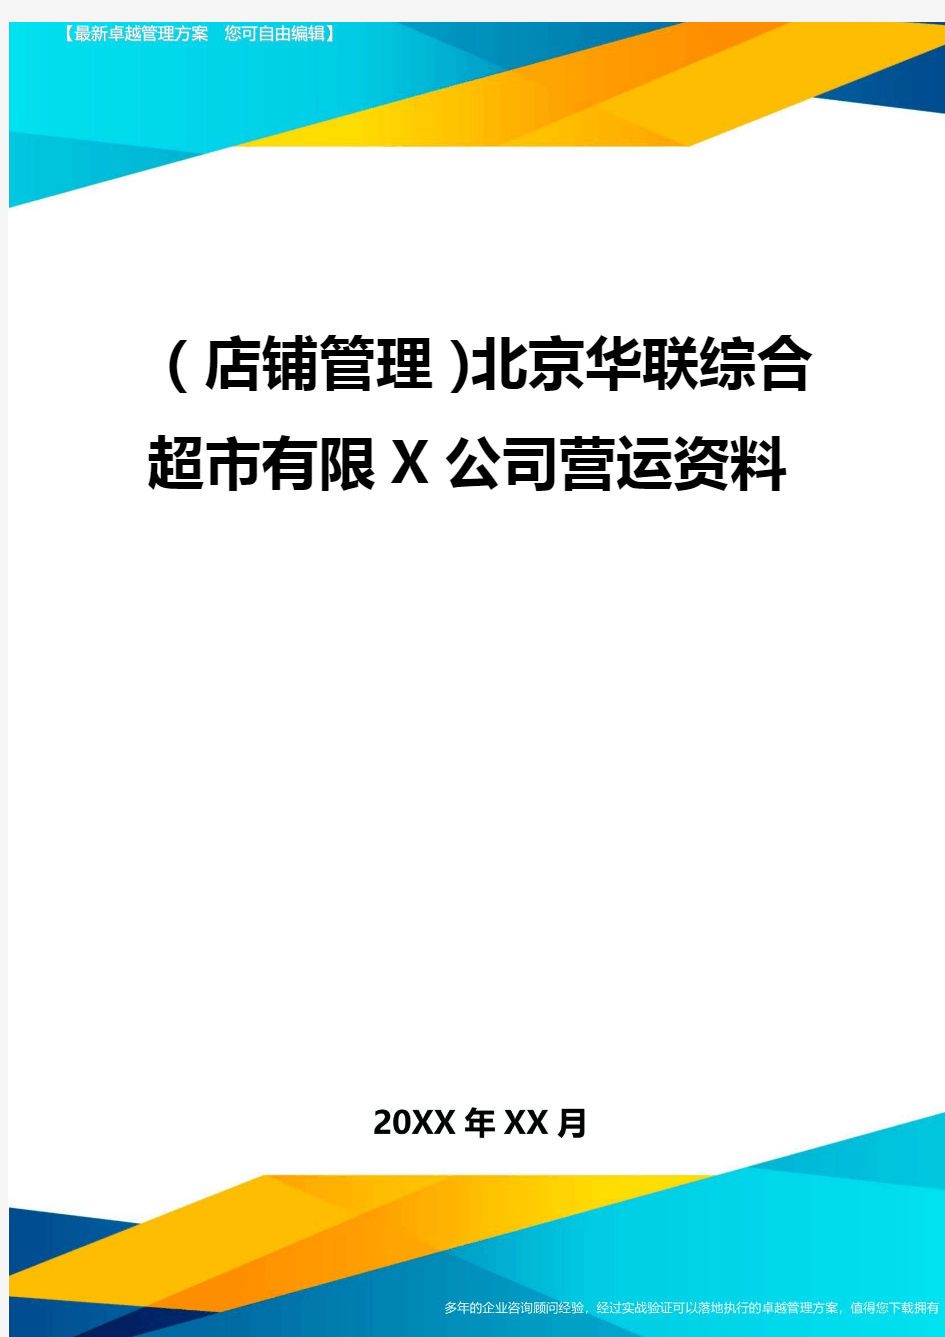 2020年(店铺管理)北京华联综合超市有限公司营运资料